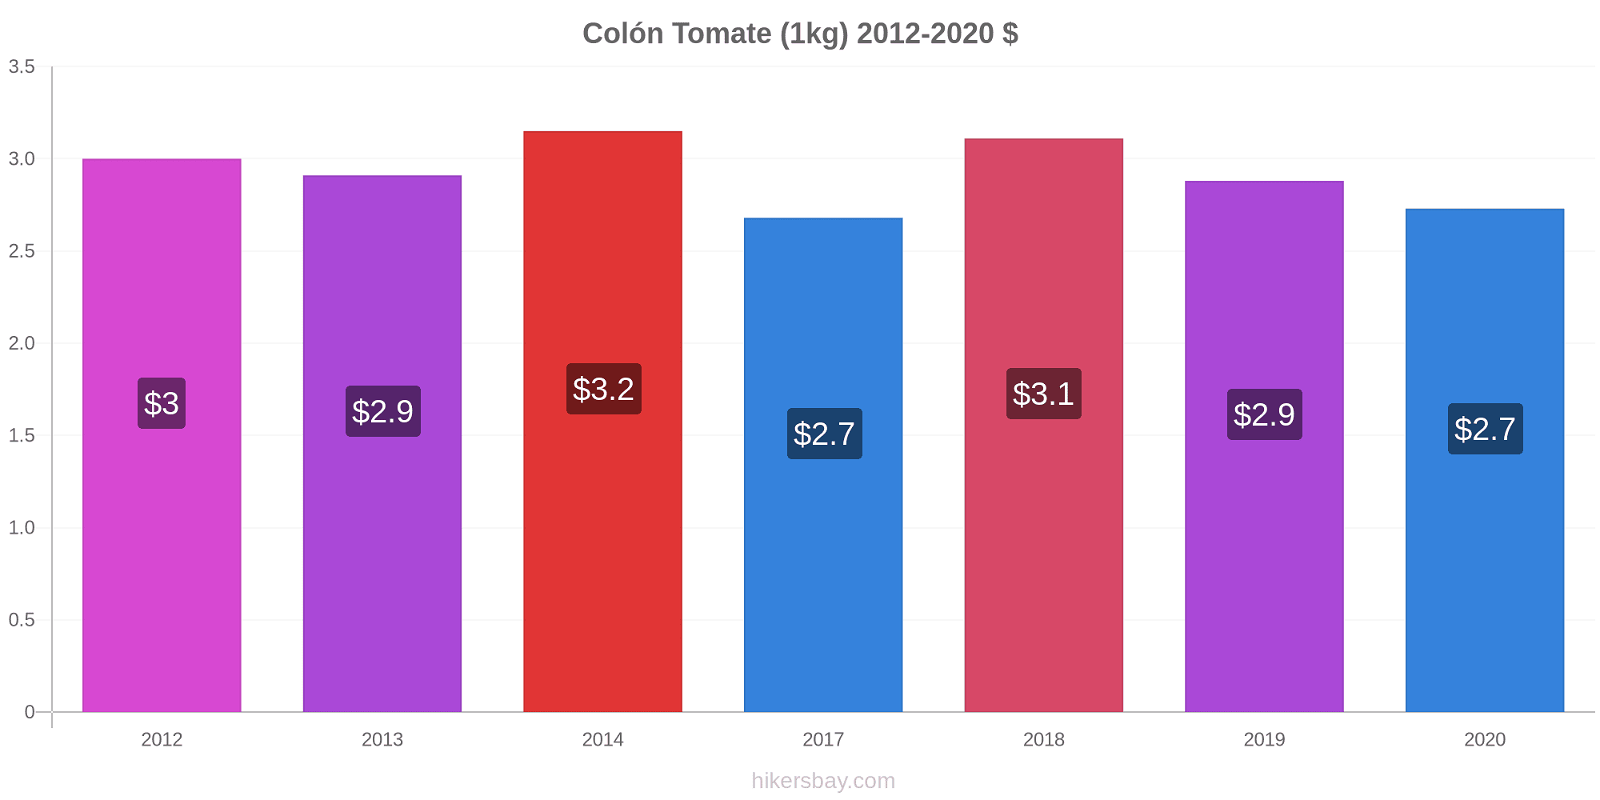 Colón cambios de precios Tomate (1kg) hikersbay.com